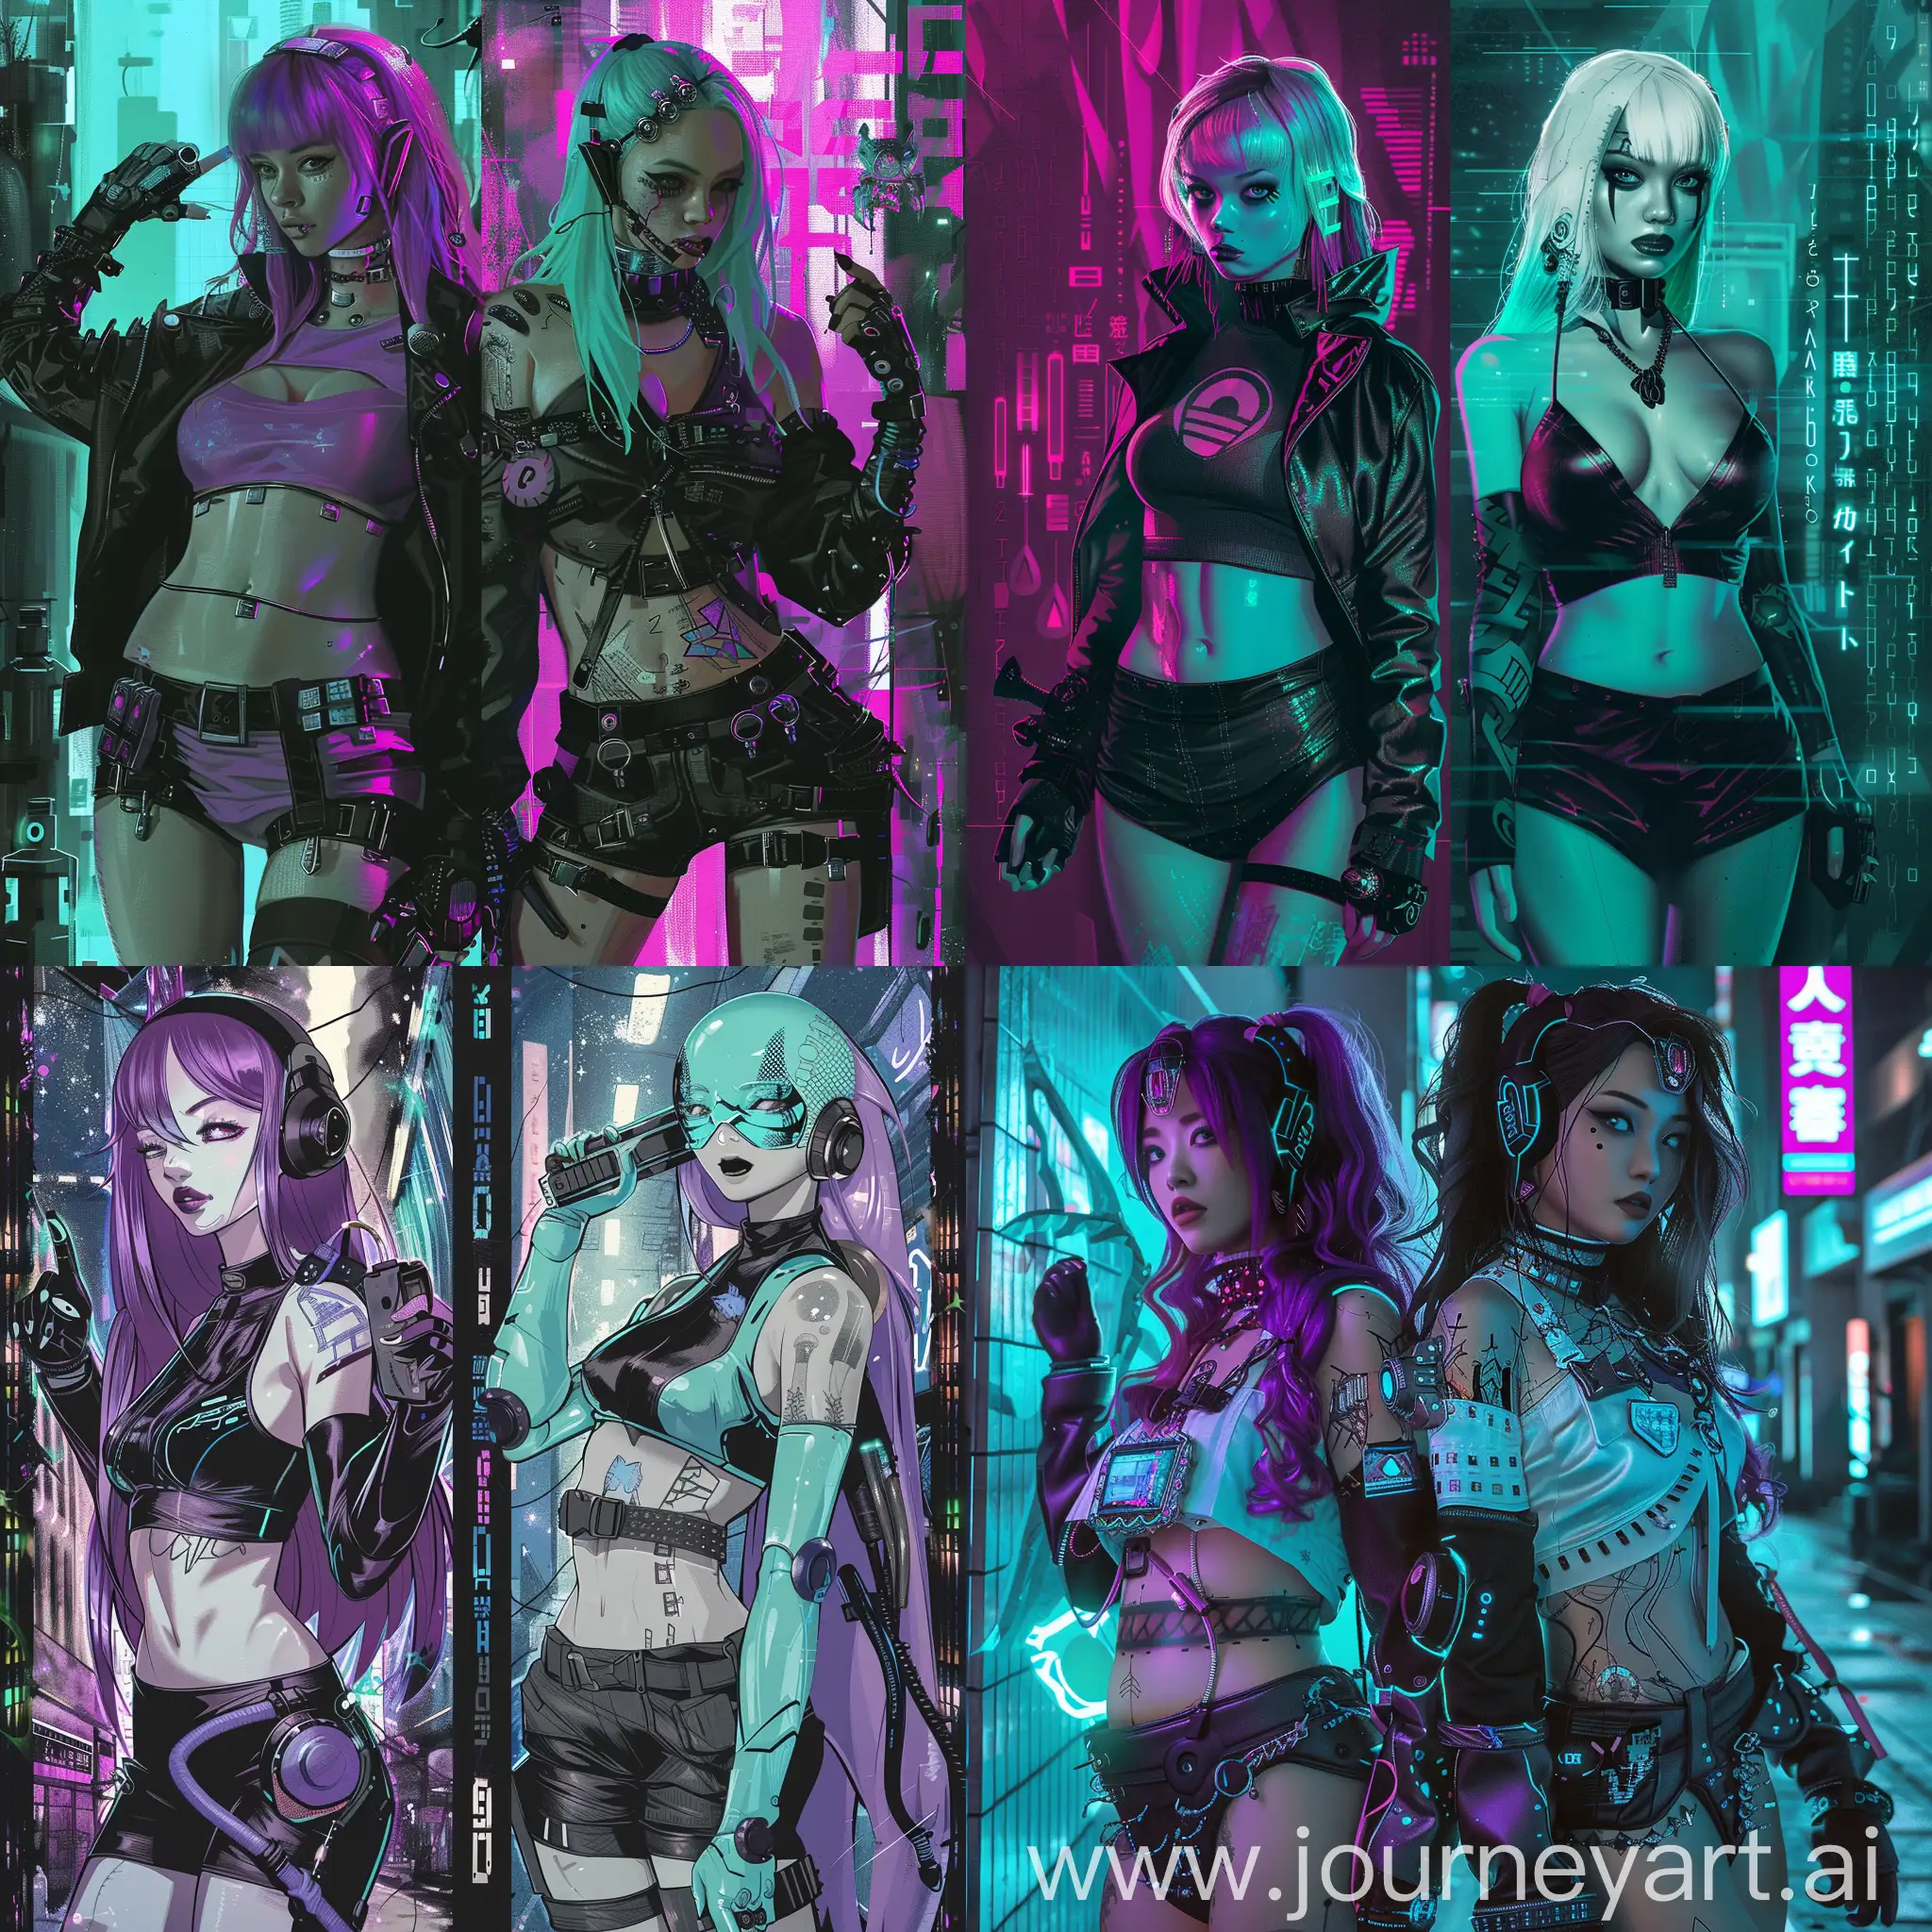 femmes cyberpunk neotokyo de diverse race humaines et aliens pose jusqua la ceinture .  mosaique 2 images, style anime . couleur principale violet et turquoise 60% noir 10%